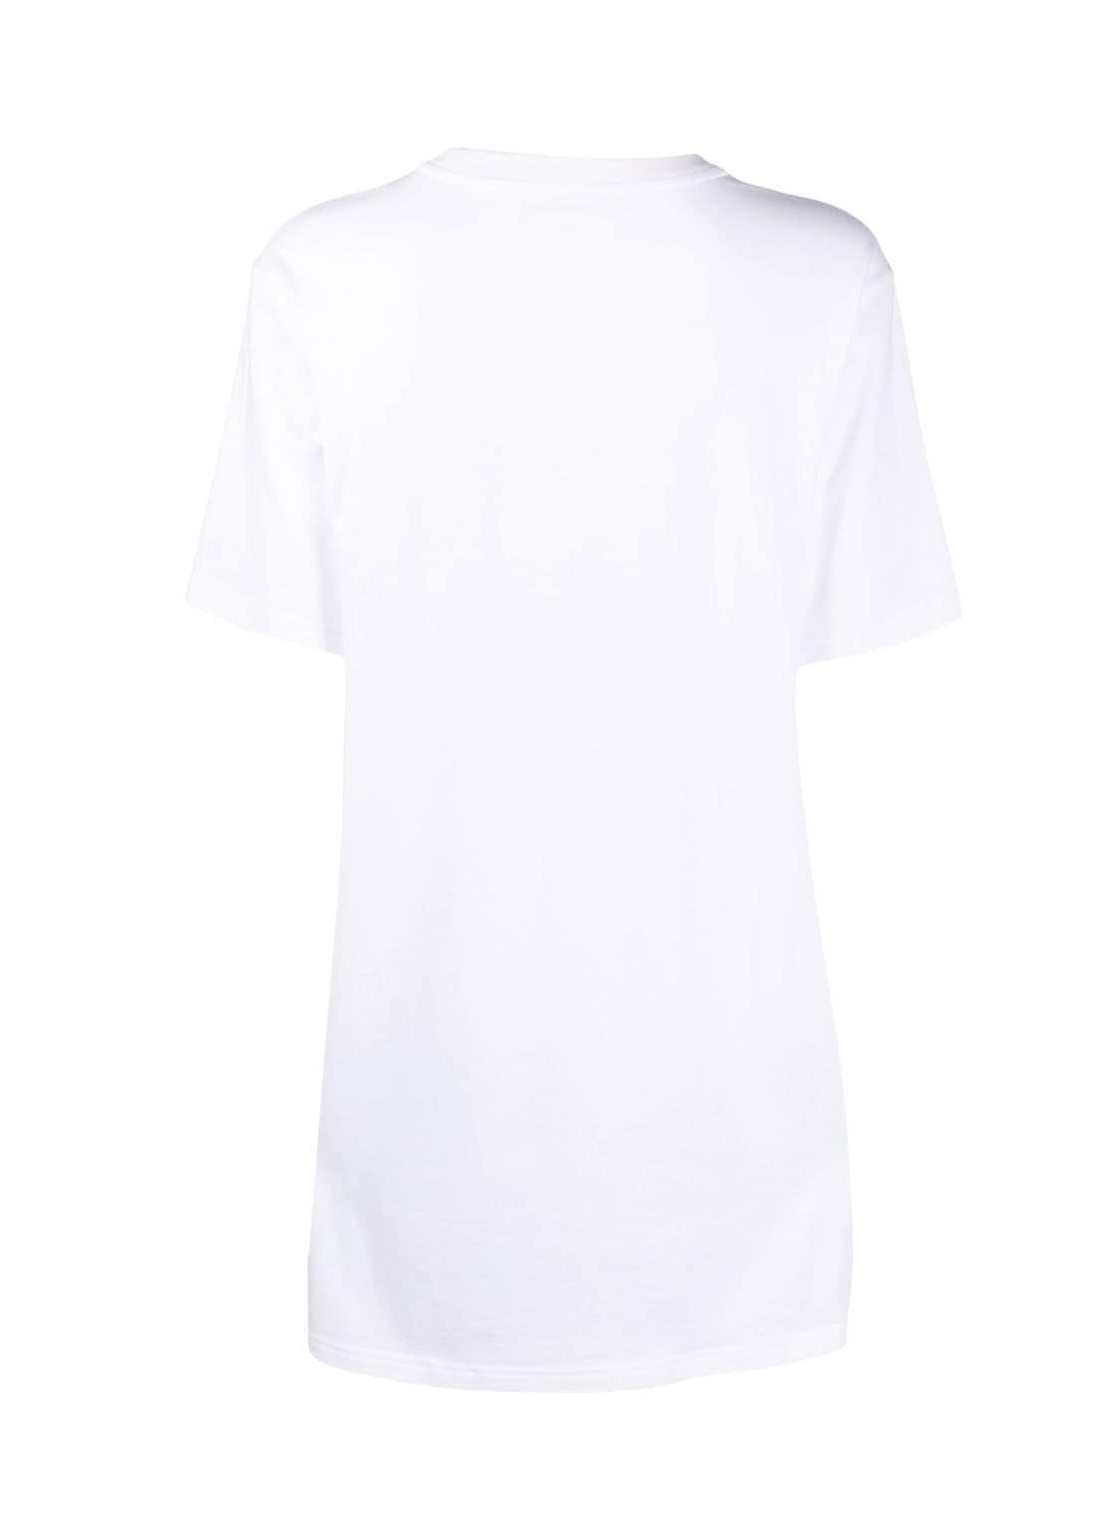 karl lagerfeld ikonik 2.0 t-shirt pj dress - 230w2114 100 Talla S